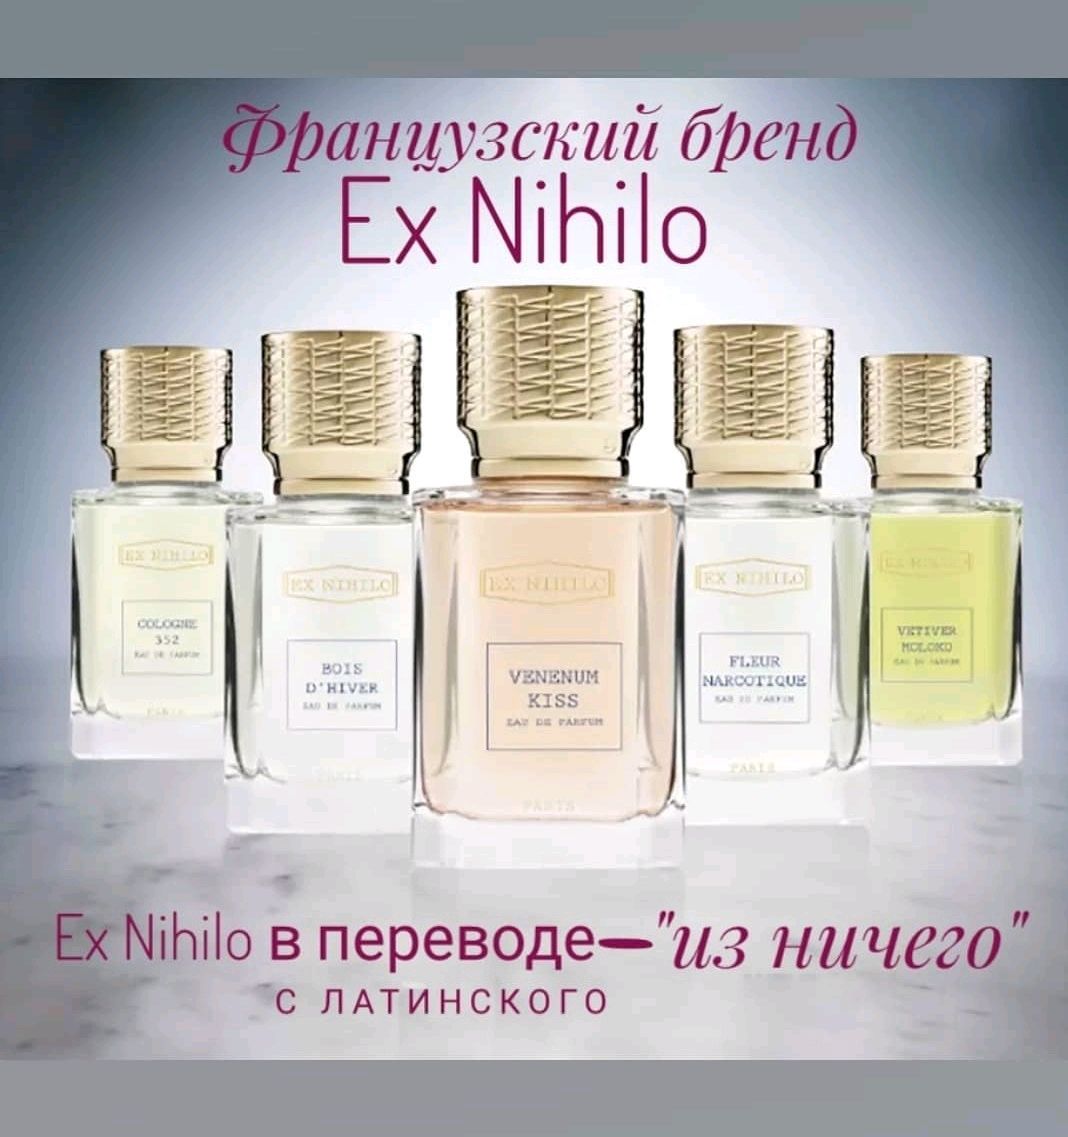 Сайт отзывов парфюмерии